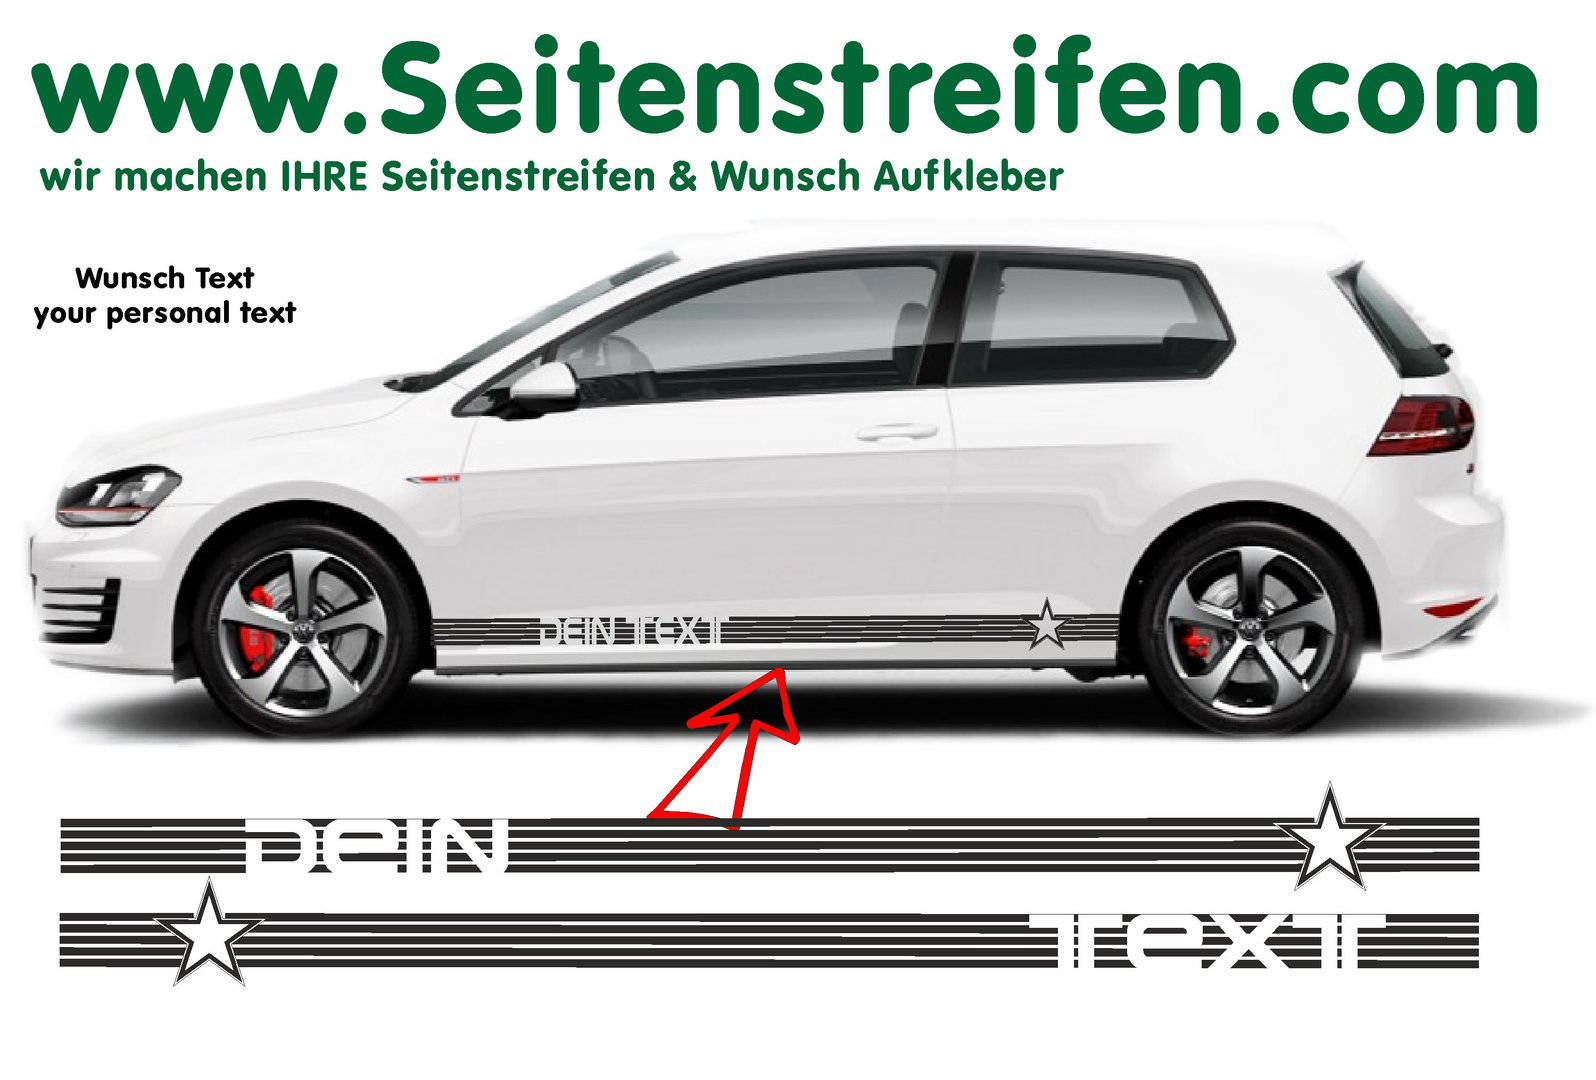 VW Golf Wunsch Text Star Stern Seitenstreifen Aufkleber Set für 3+4 Türer - Art. Nr.: 8518